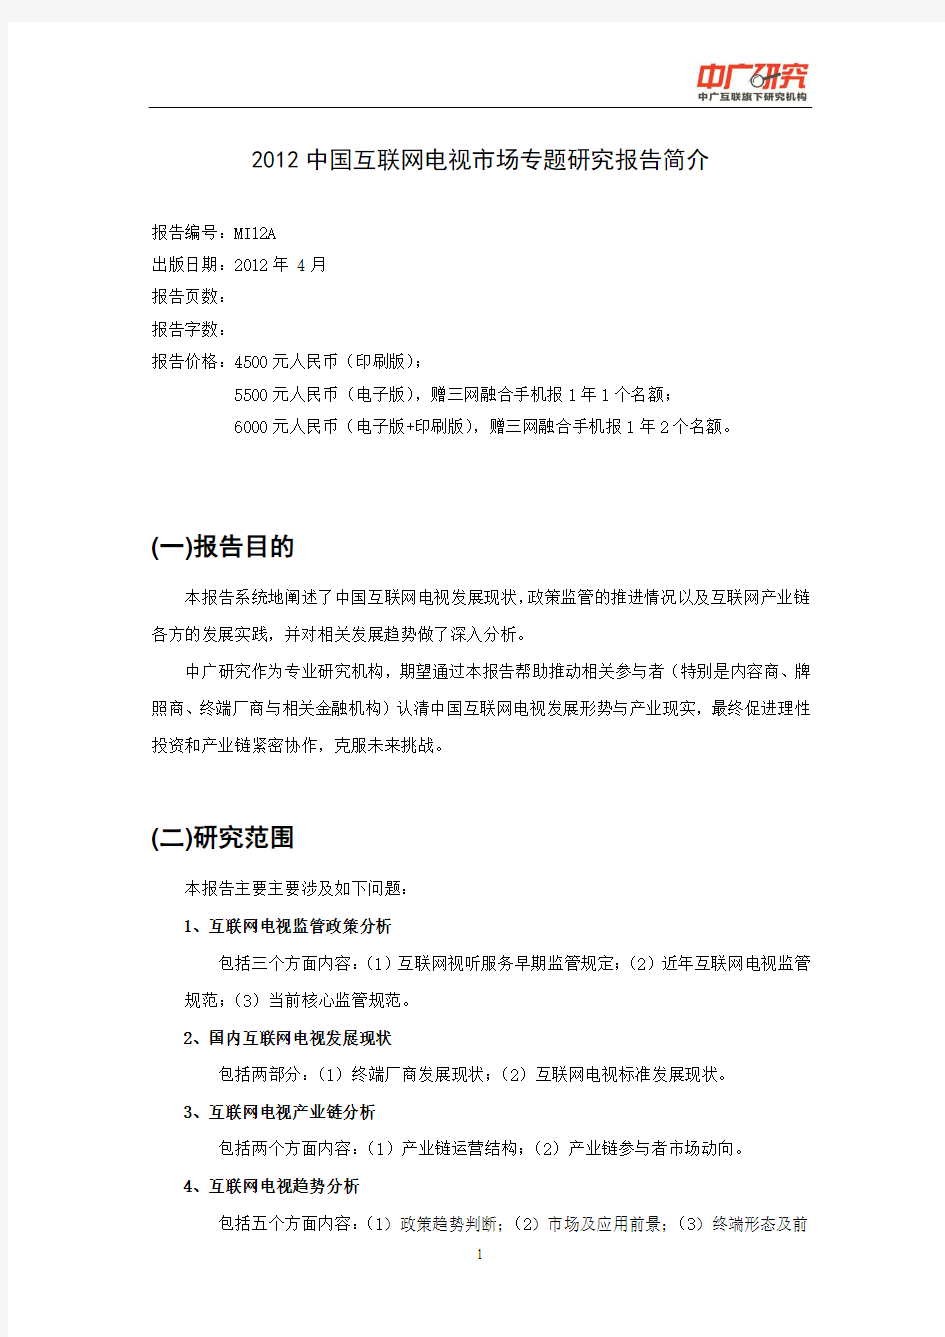 2012中国互联网电视专题研究报告简介